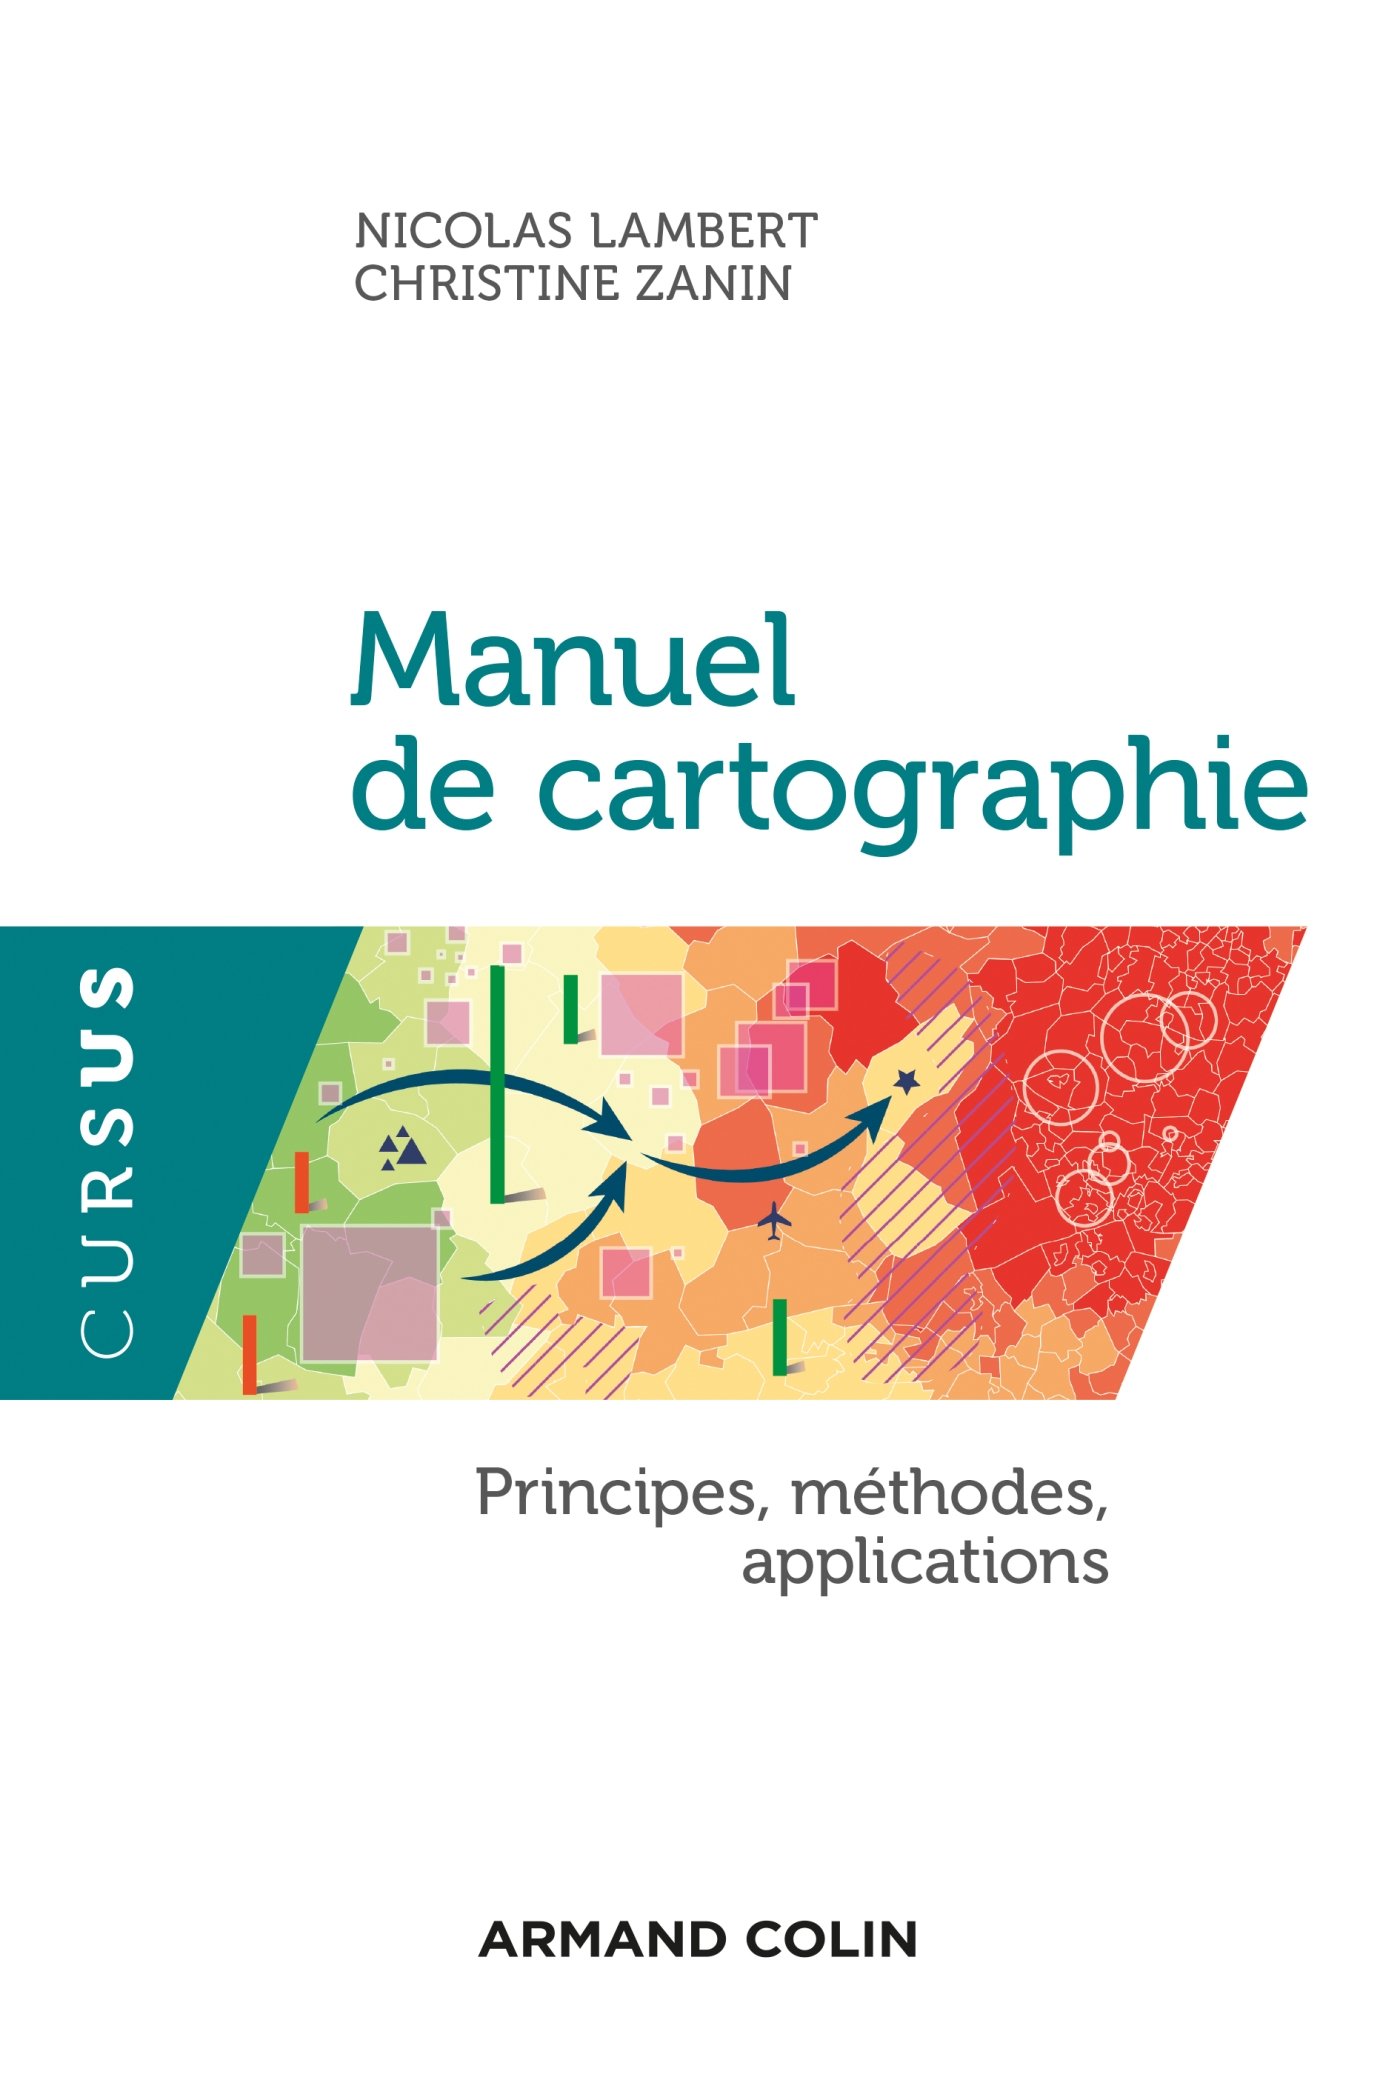 Manuel de cartographie. Principes, méthodes, applications, 2016, 224 p.